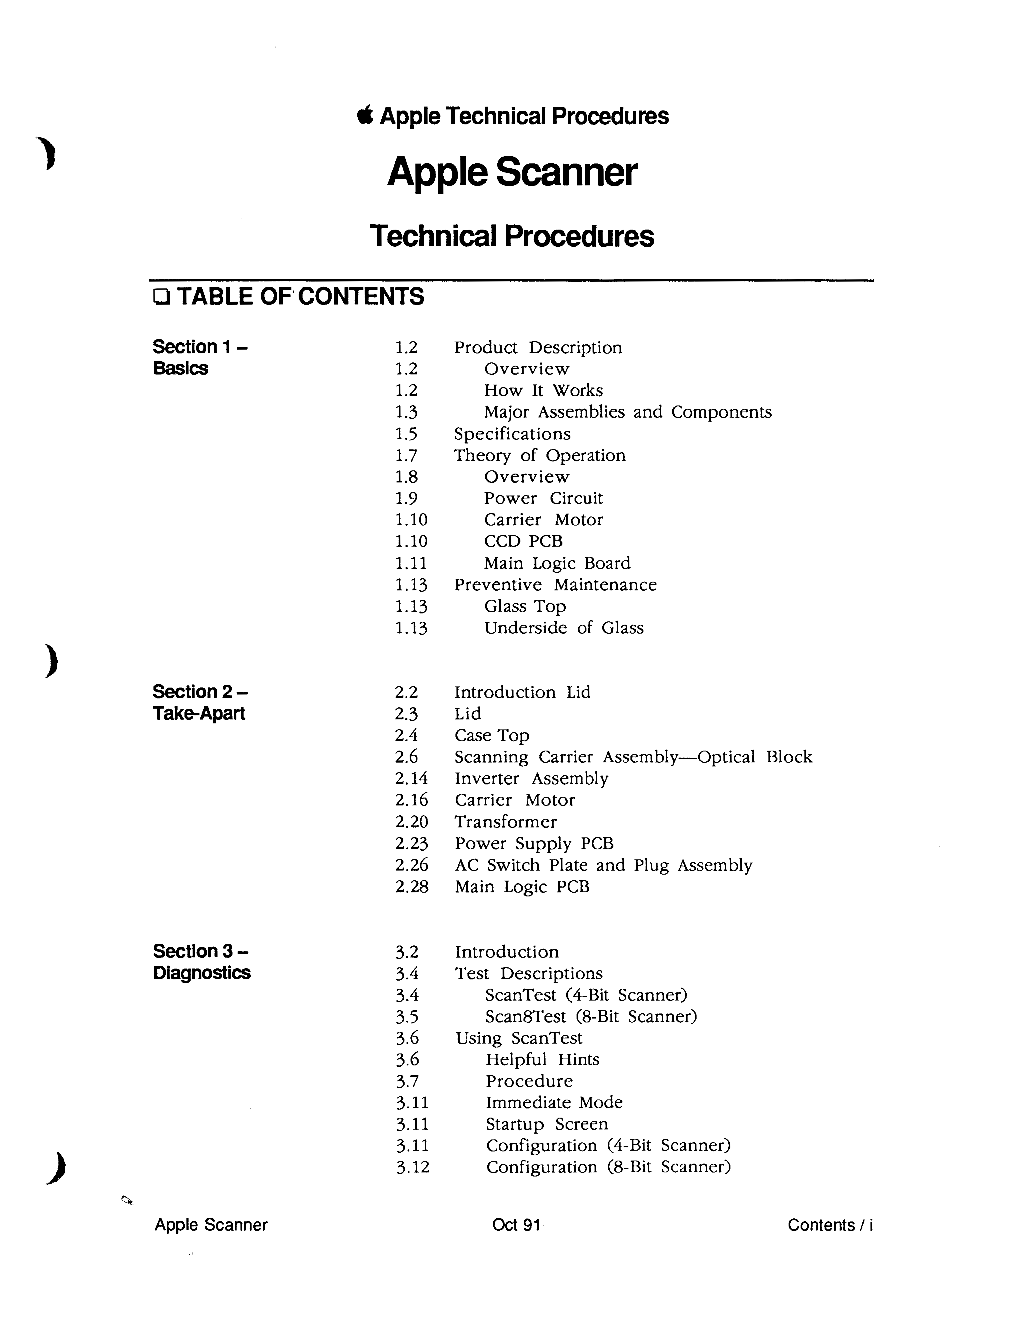 Apple Scanner Technical Procedures Oct 91